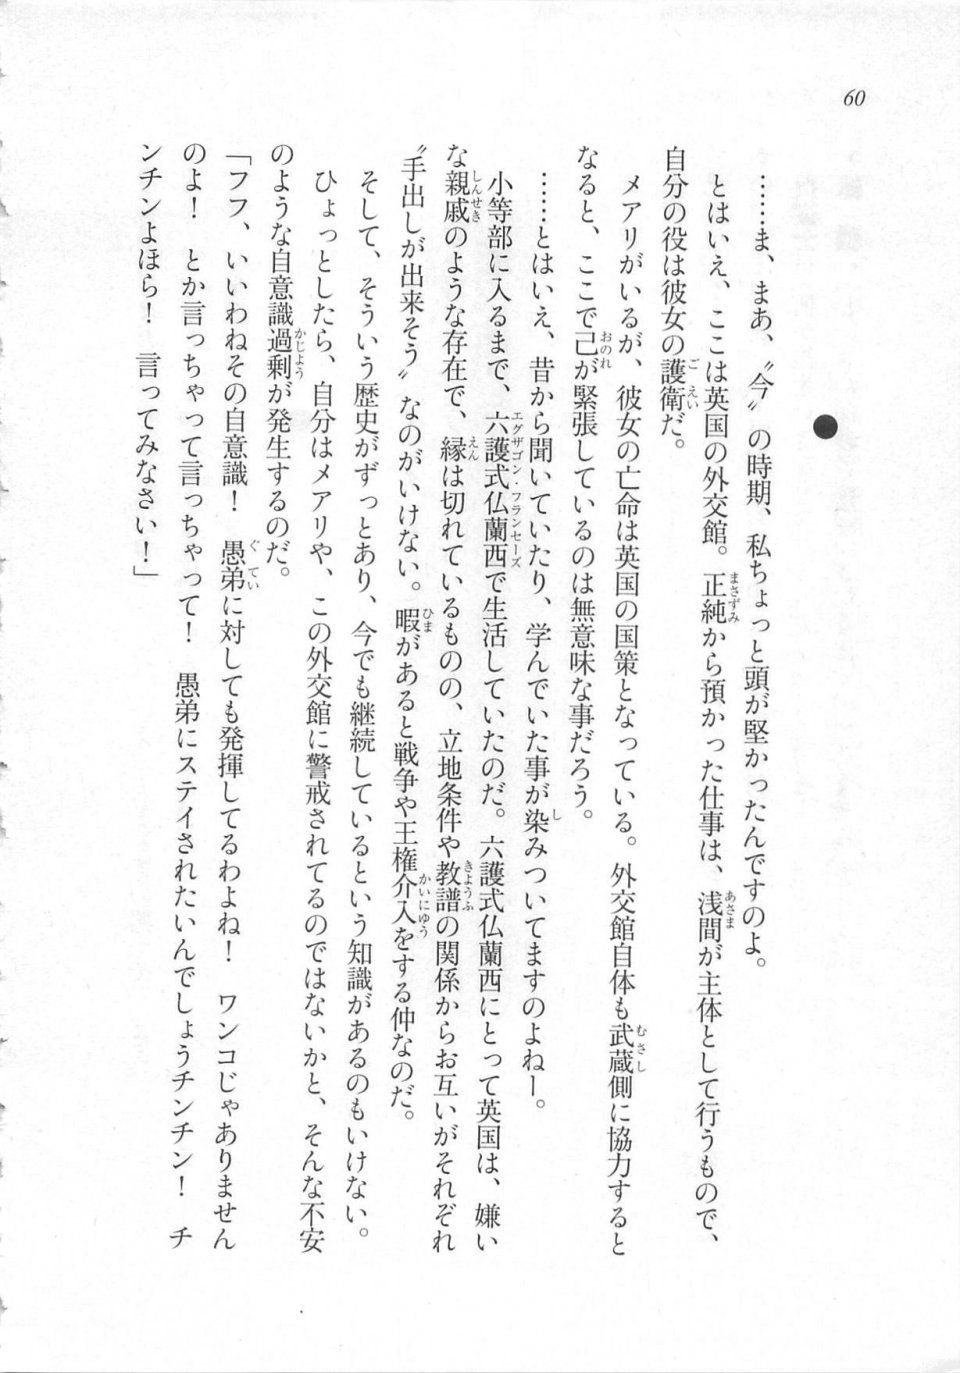 Kyoukai Senjou no Horizon LN Sidestory Vol 3 - Photo #64